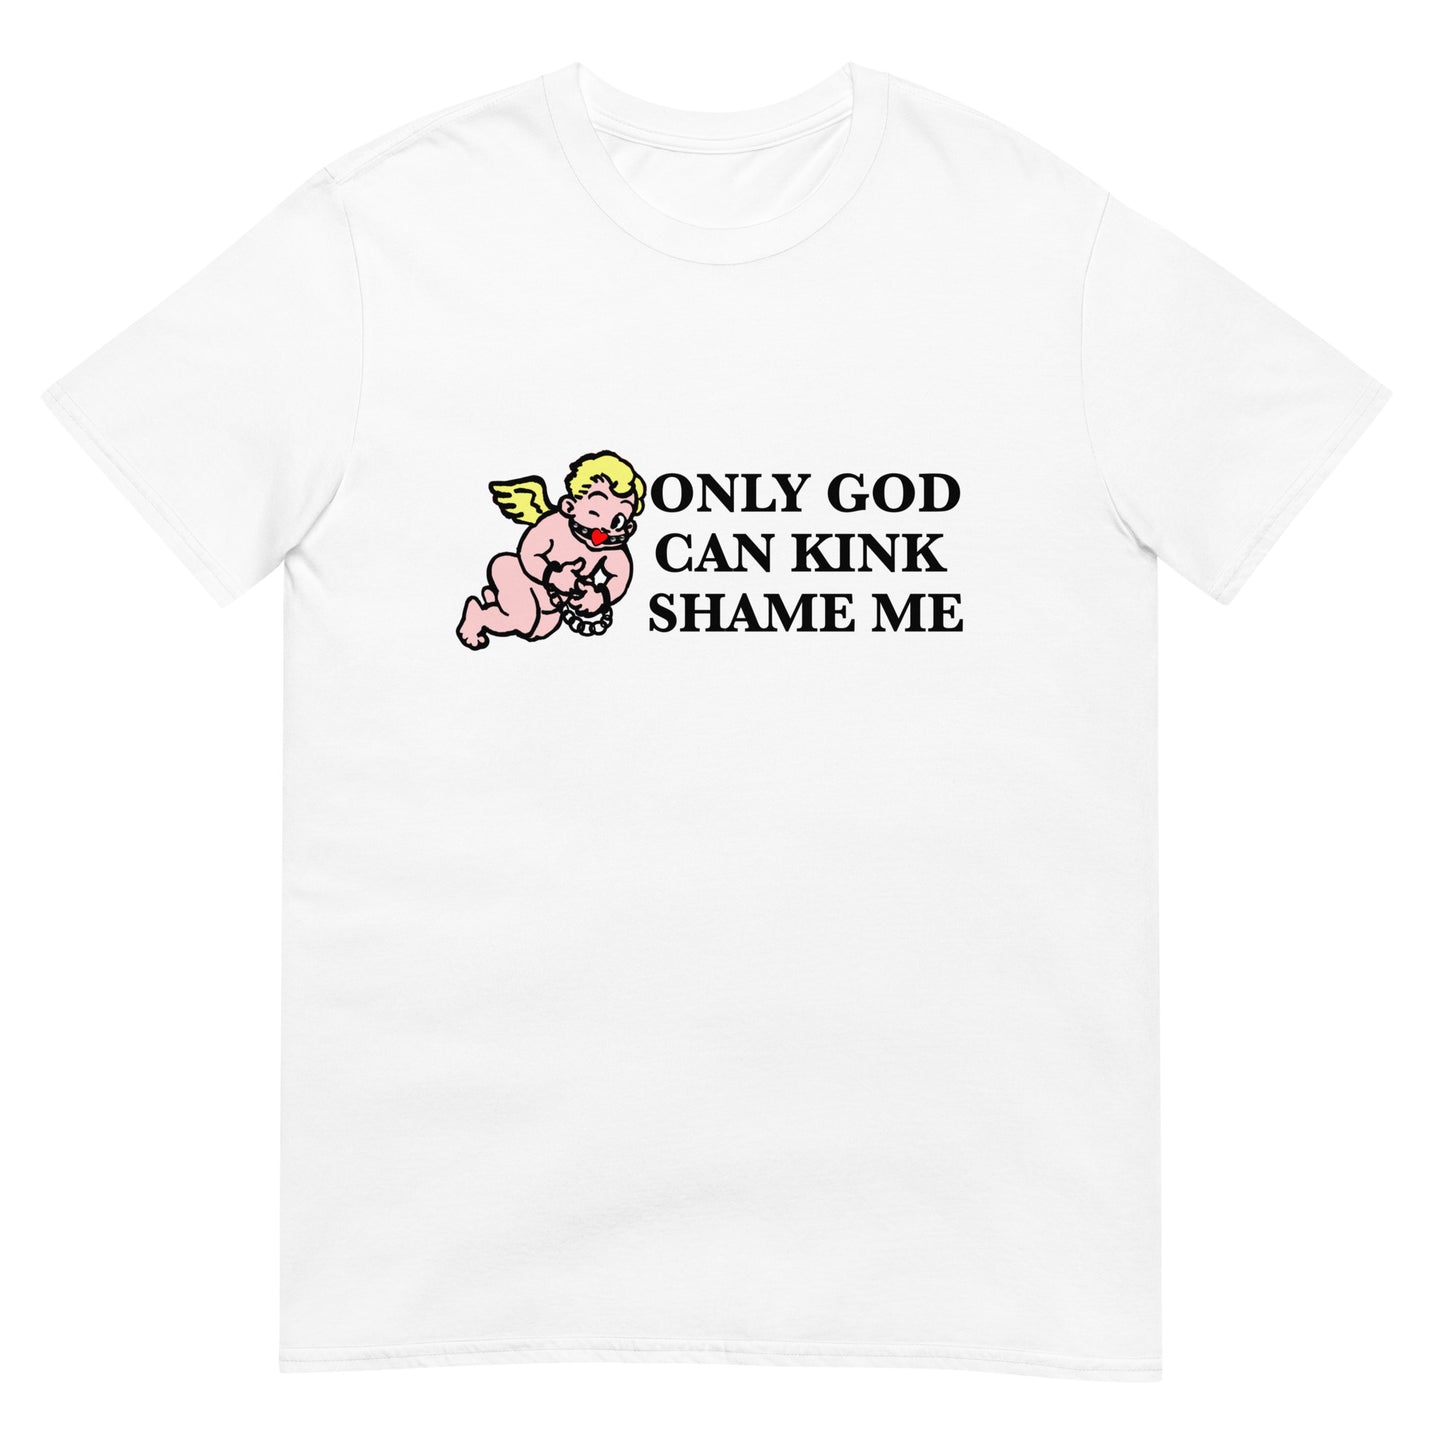 Only God Can Kink Shame Me.